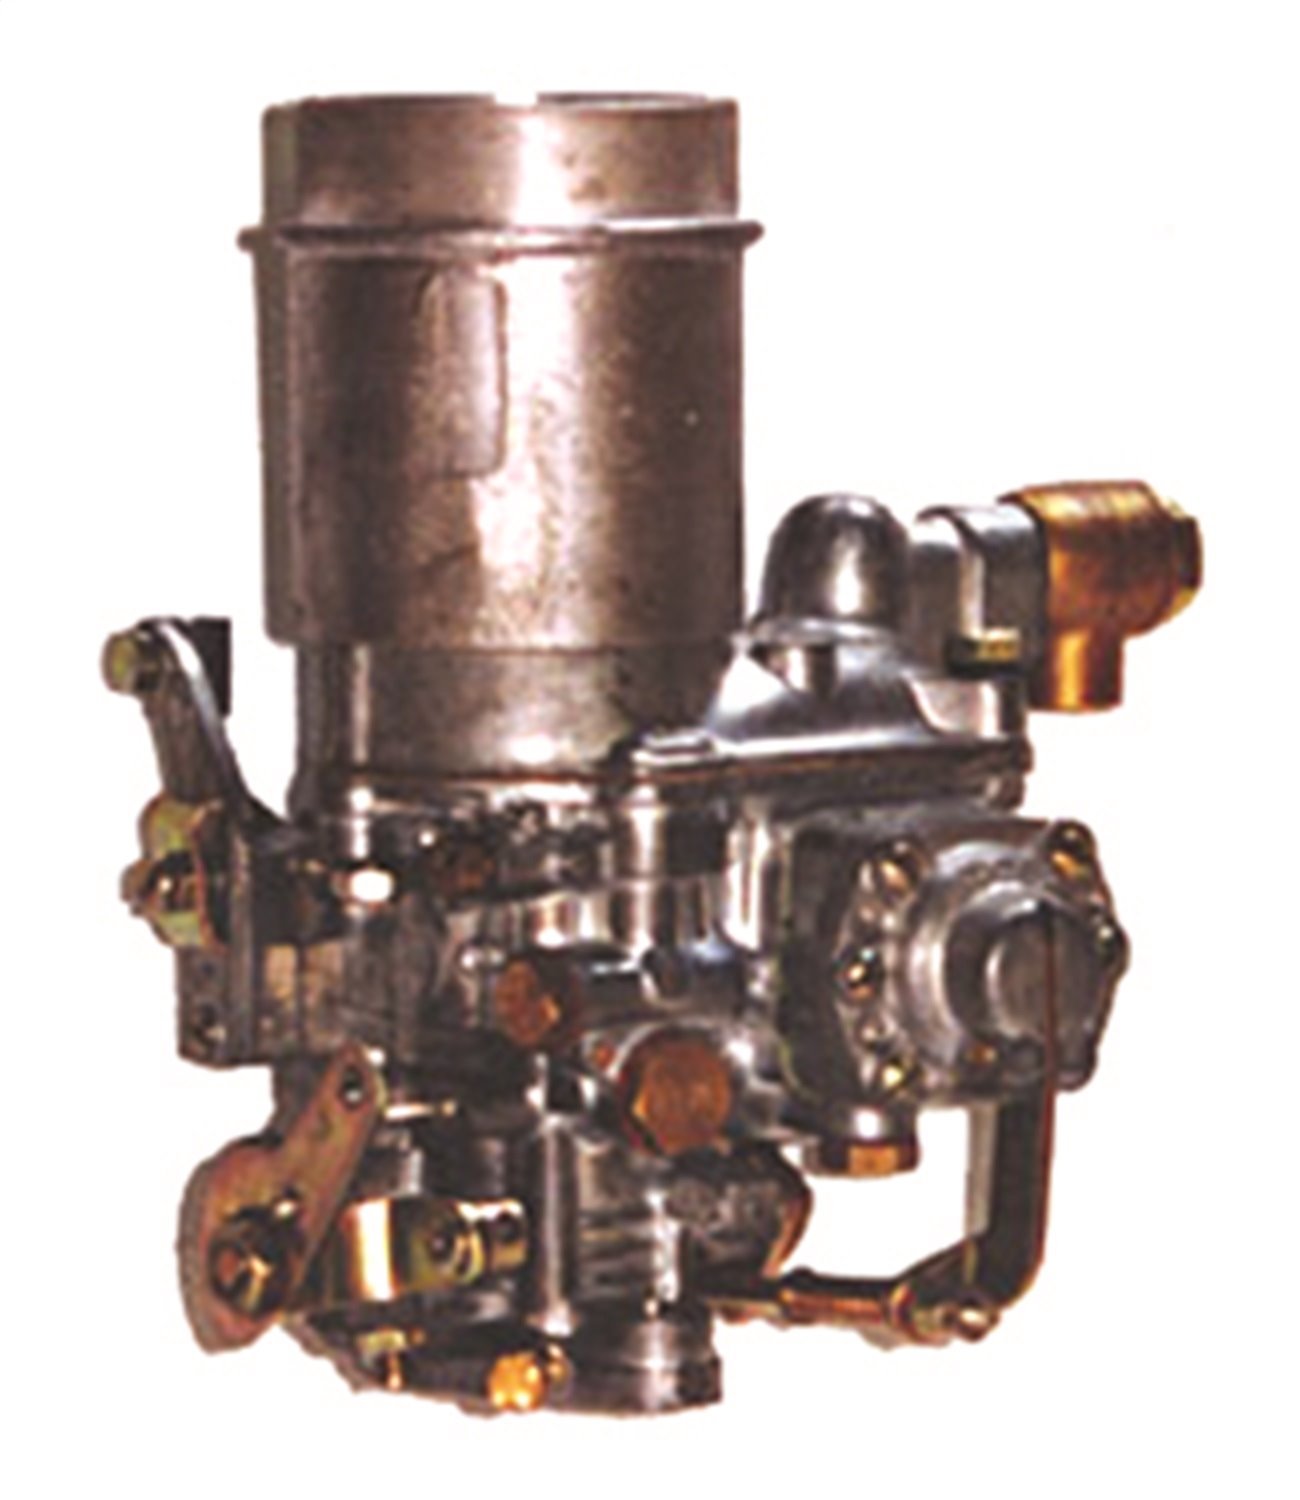 This Solex-design carburetor from Omix-ADA fits L-head 4